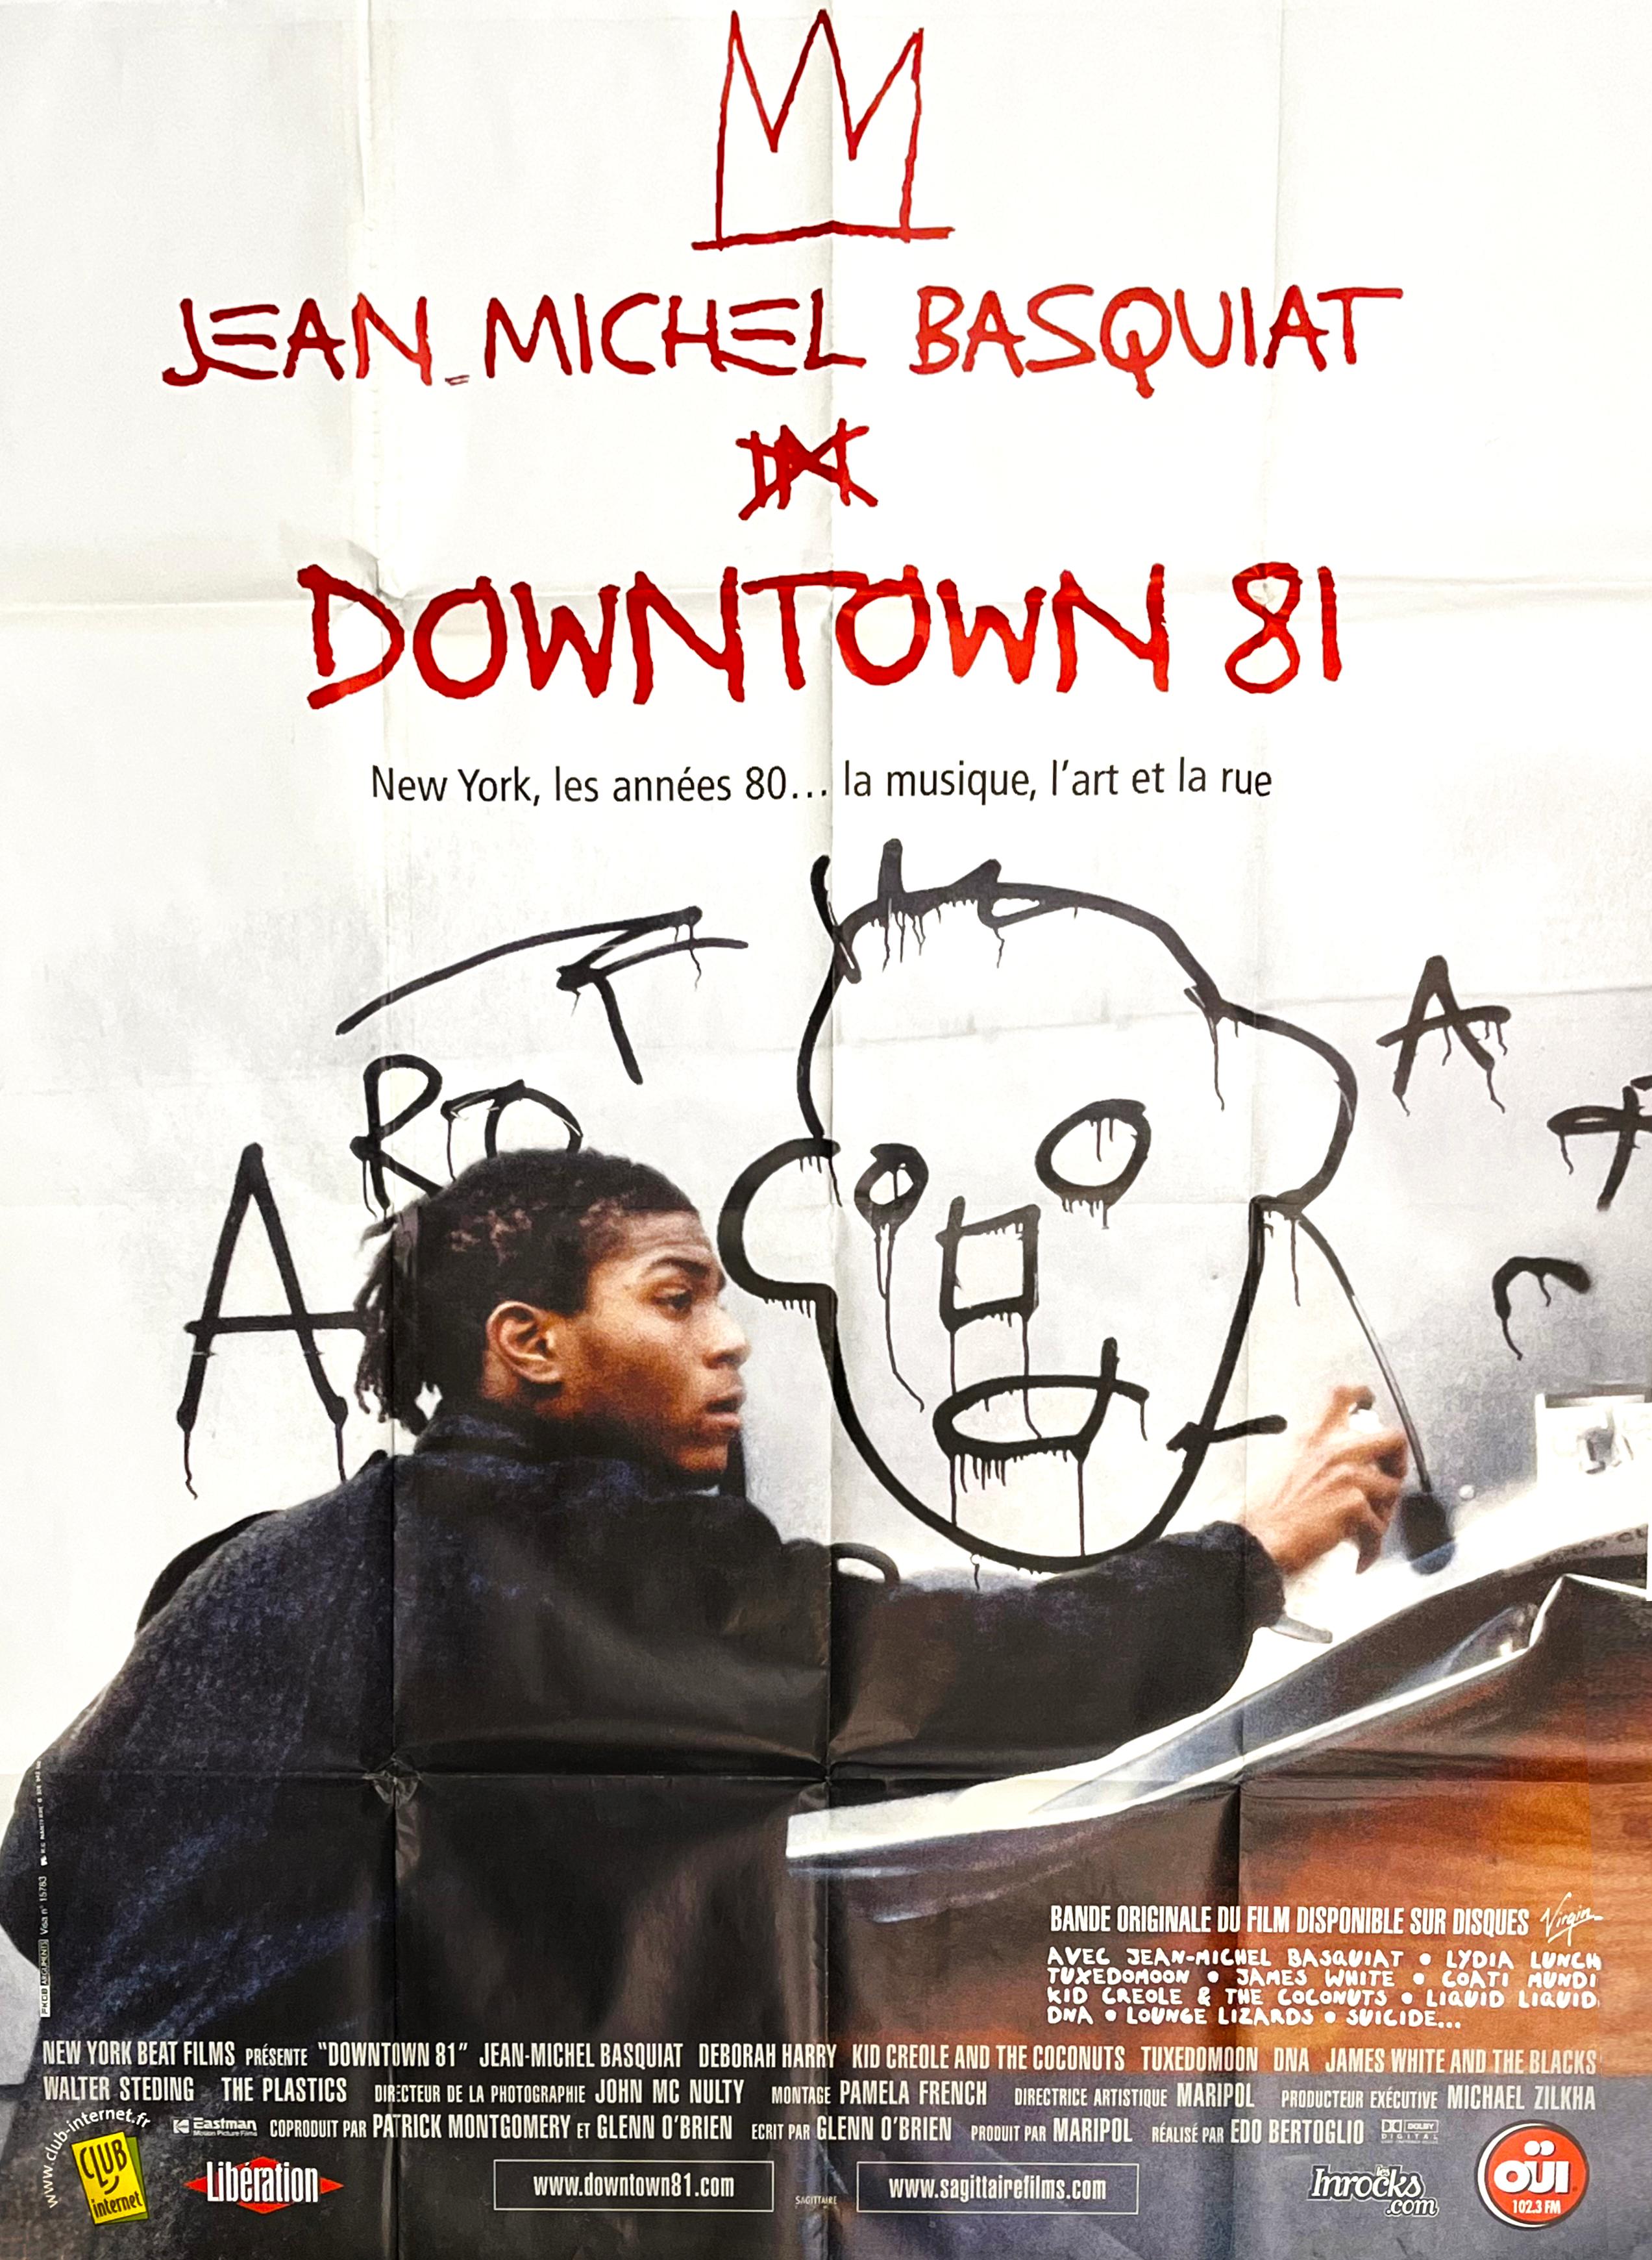 Affiche du film Basquiat Downtown 81 (vintage Basquiat)  - Print de Jean-Michel Basquiat